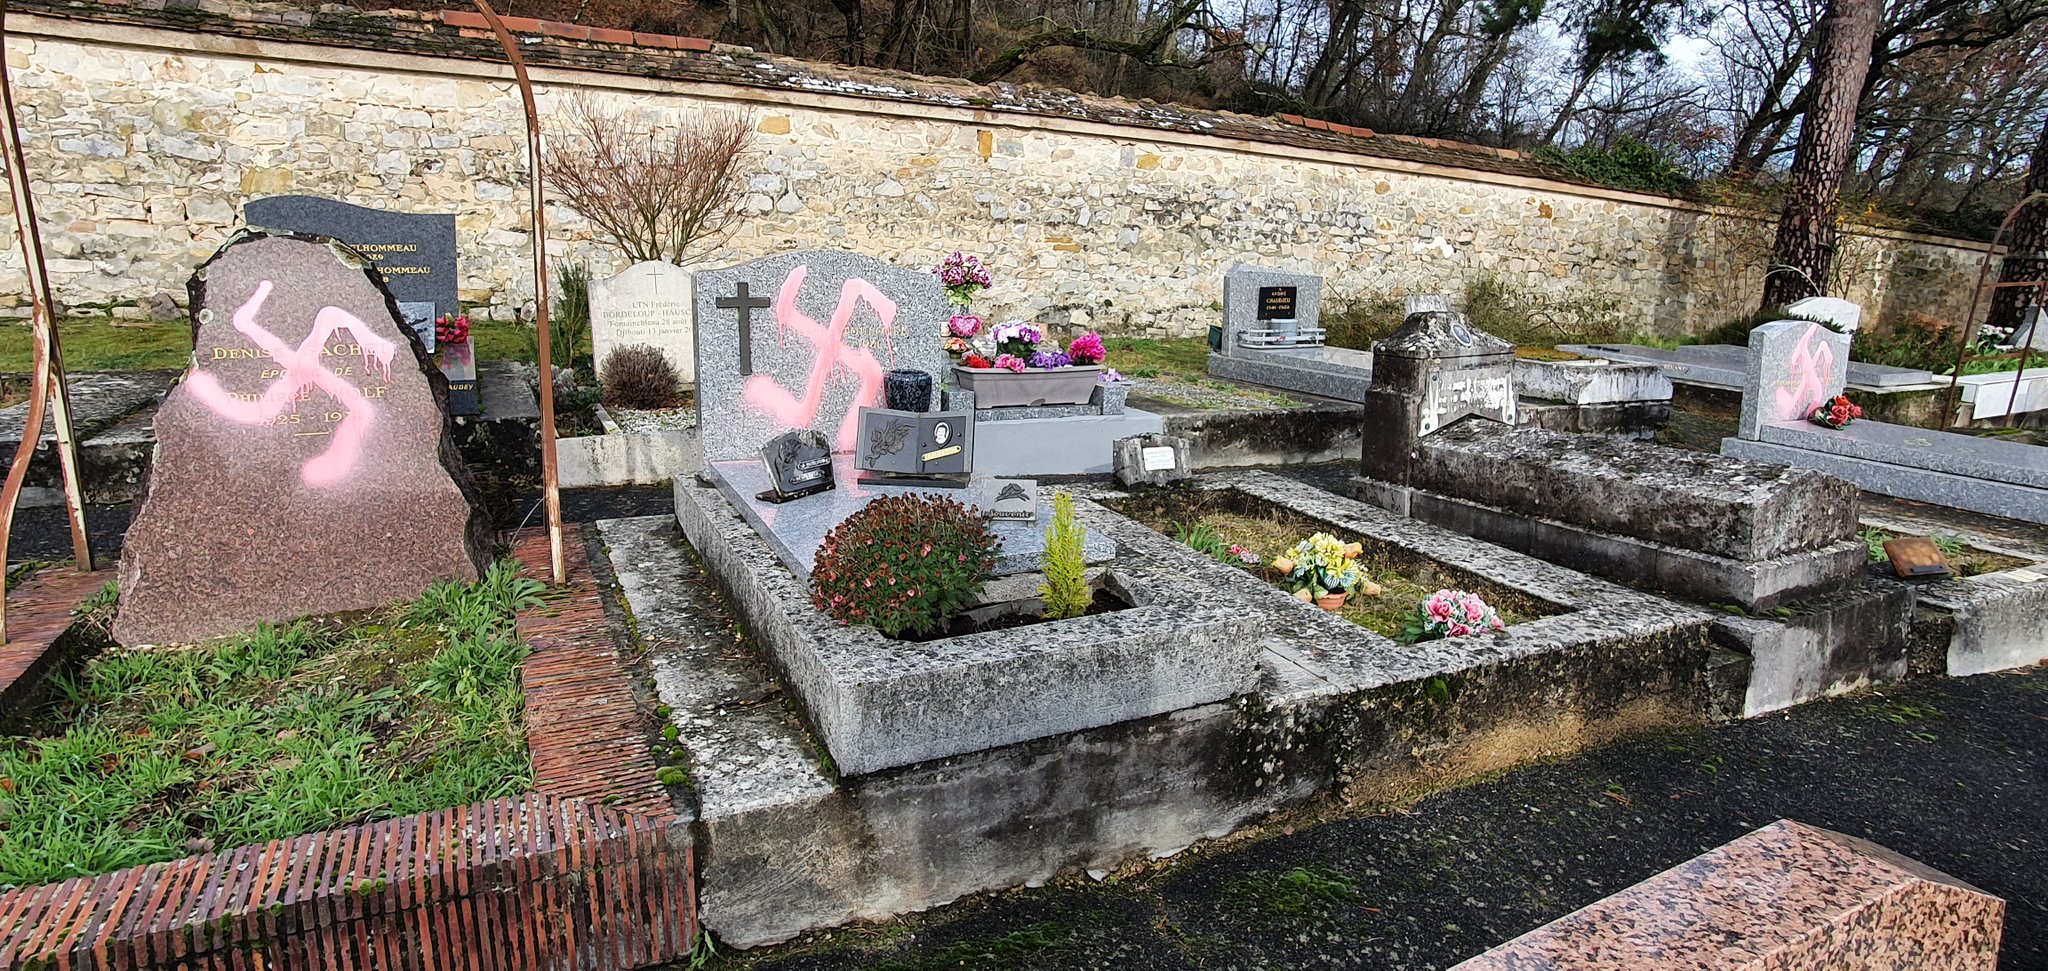 Похоронен во франции. Нуриев кладбище в Париже. Могила де Круа. Памятник Нуриеву в Париже на могиле. Де ла Круа во Франции могила.